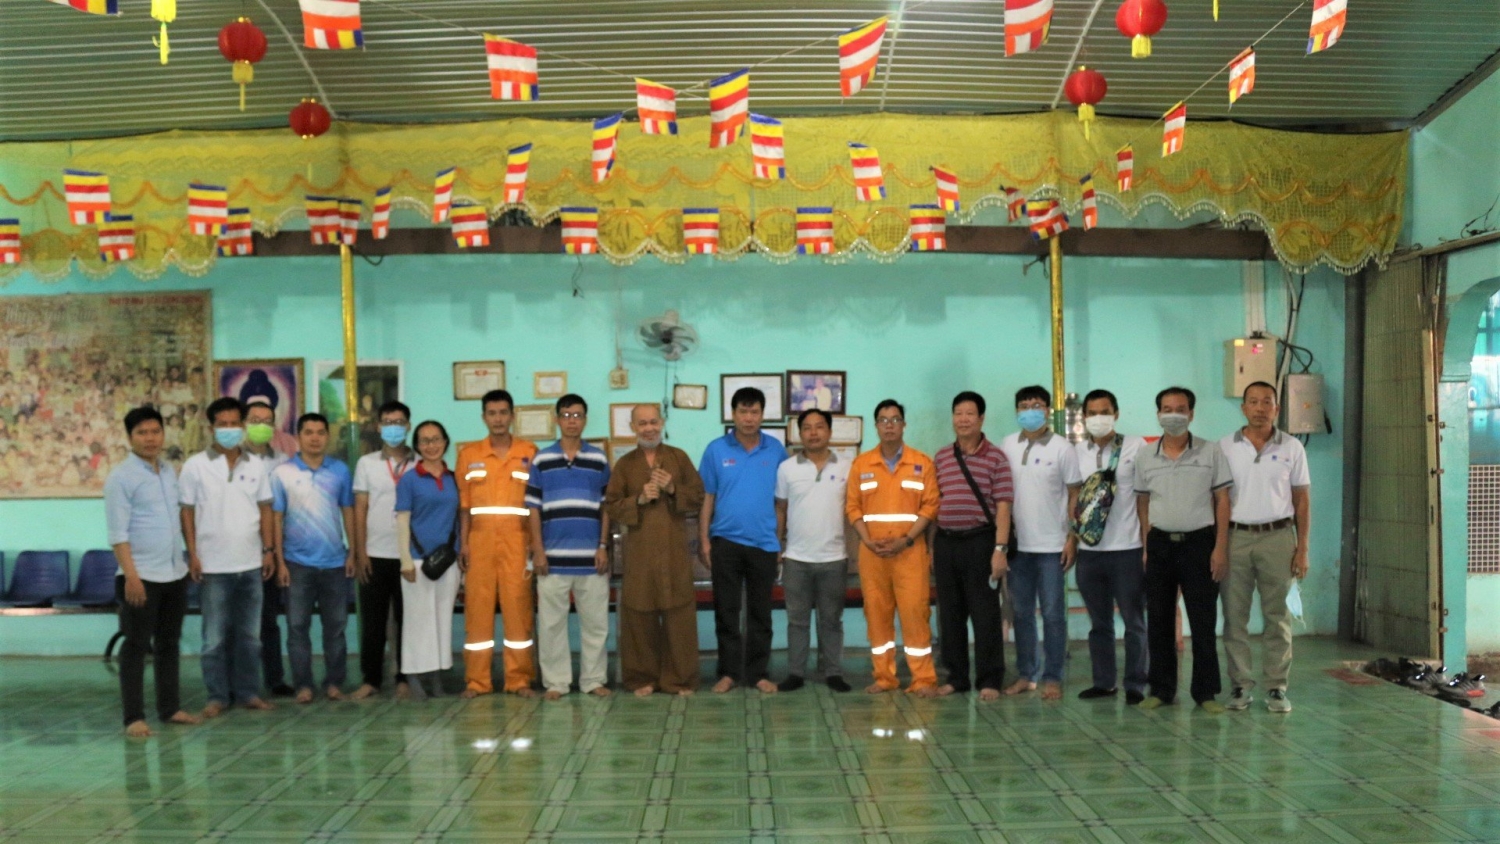 KĐN – Hành trình yêu thương đến Trung tâm nhân đạo Bồng Lai